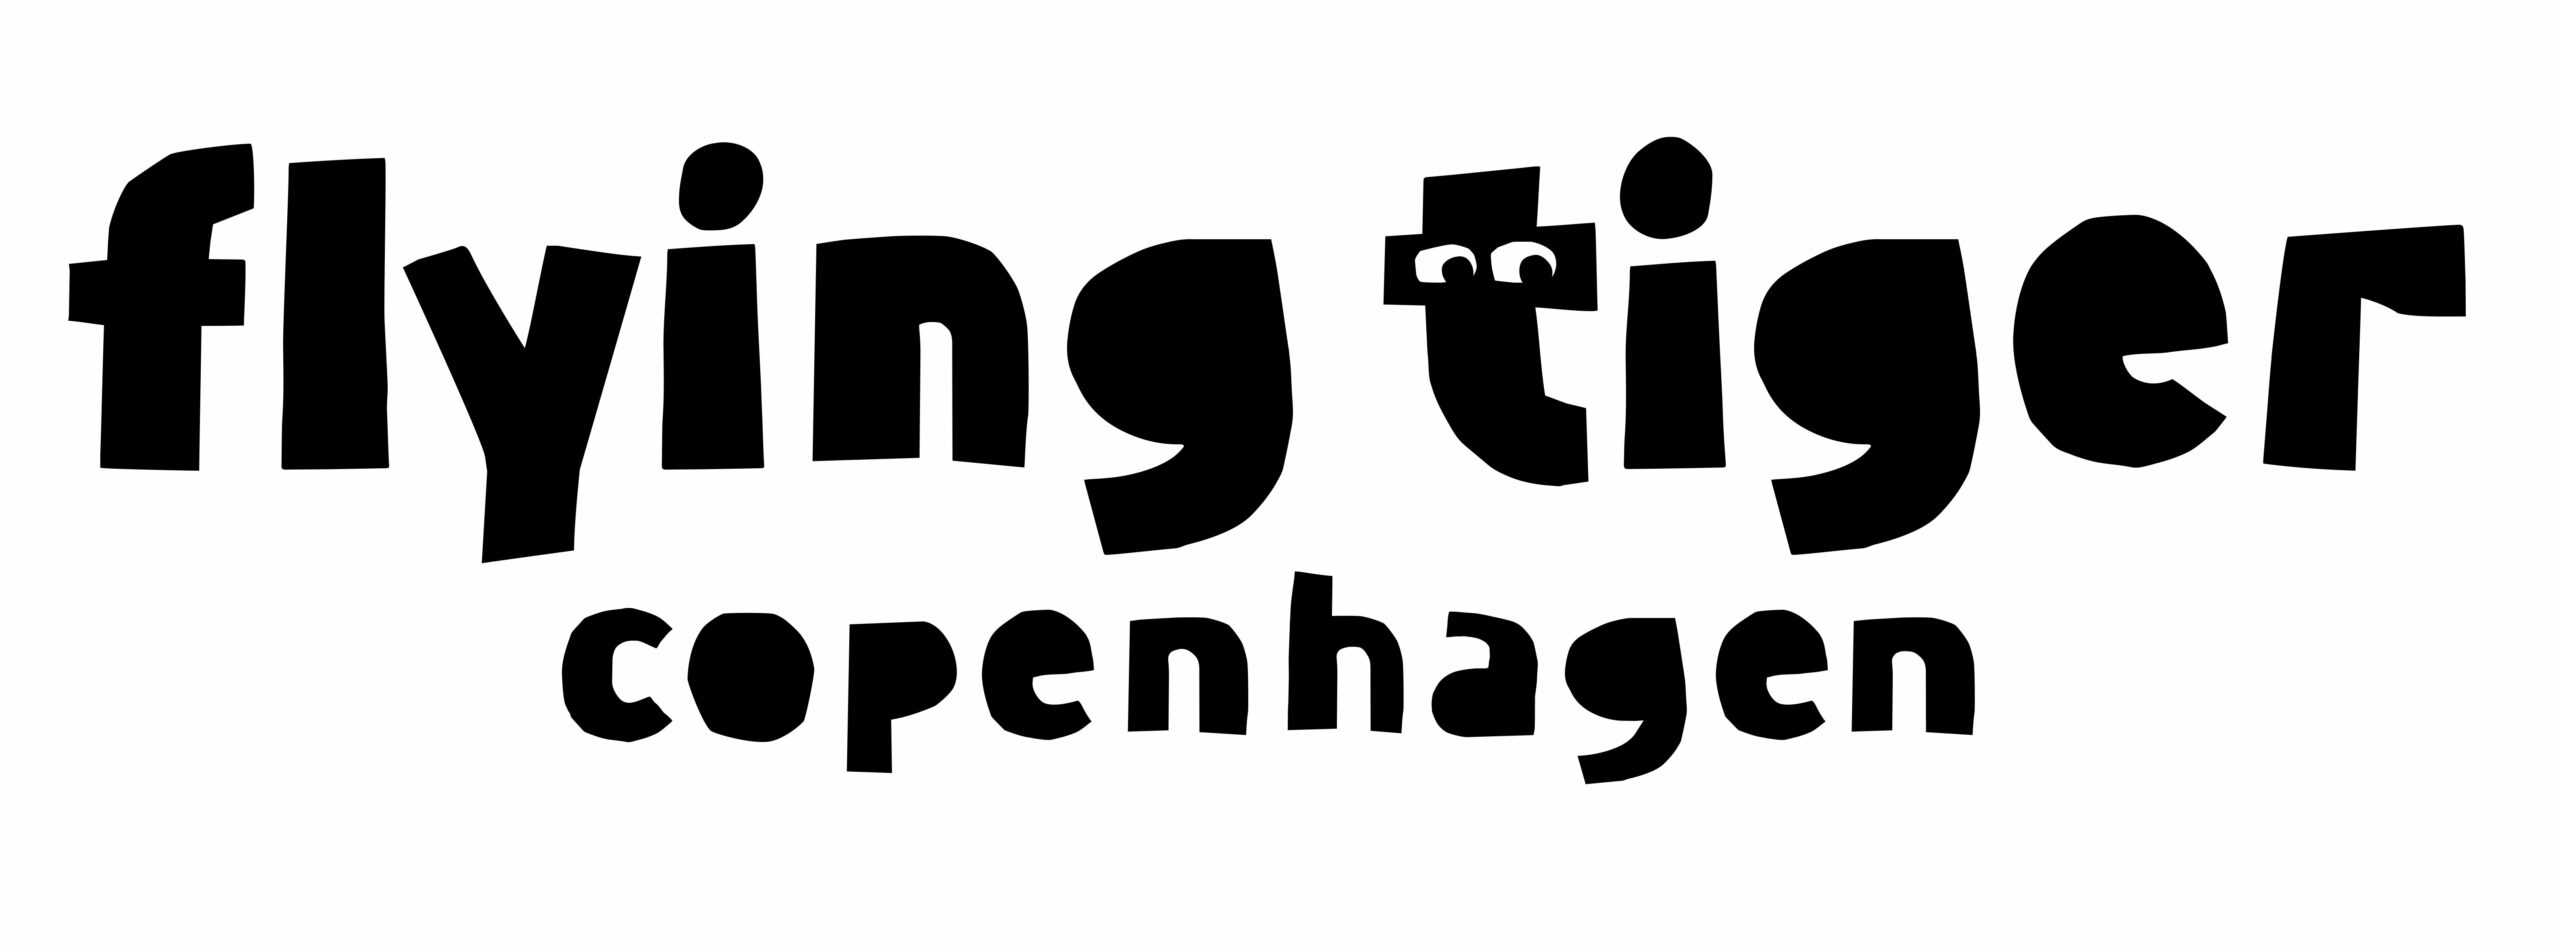 Flying Tiger Copenhagen Logo